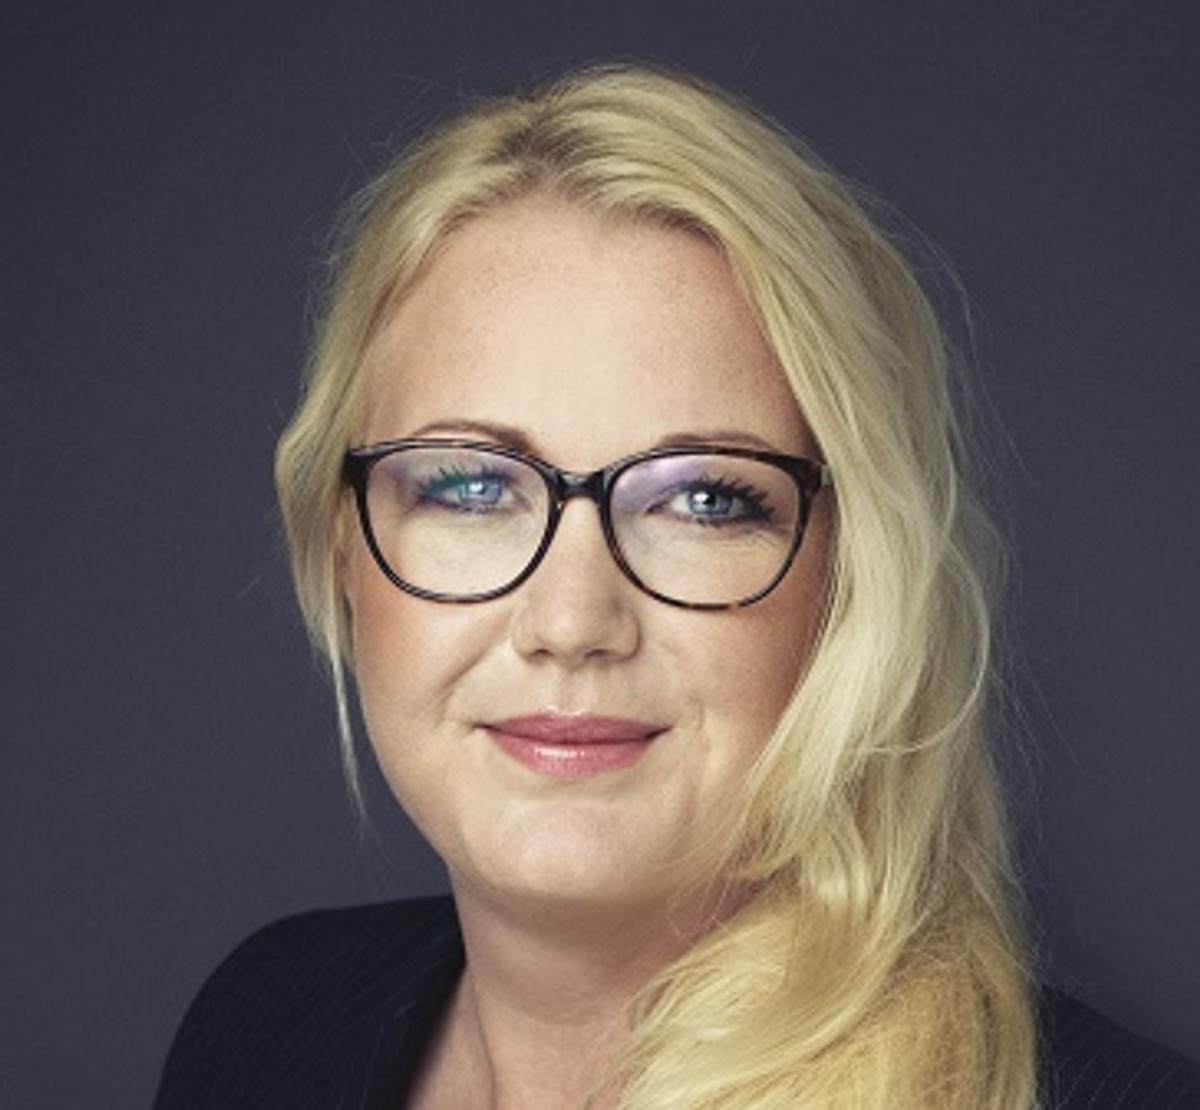 LeaseWeb stelt Svenja de Vos aan als nieuwe CTO image